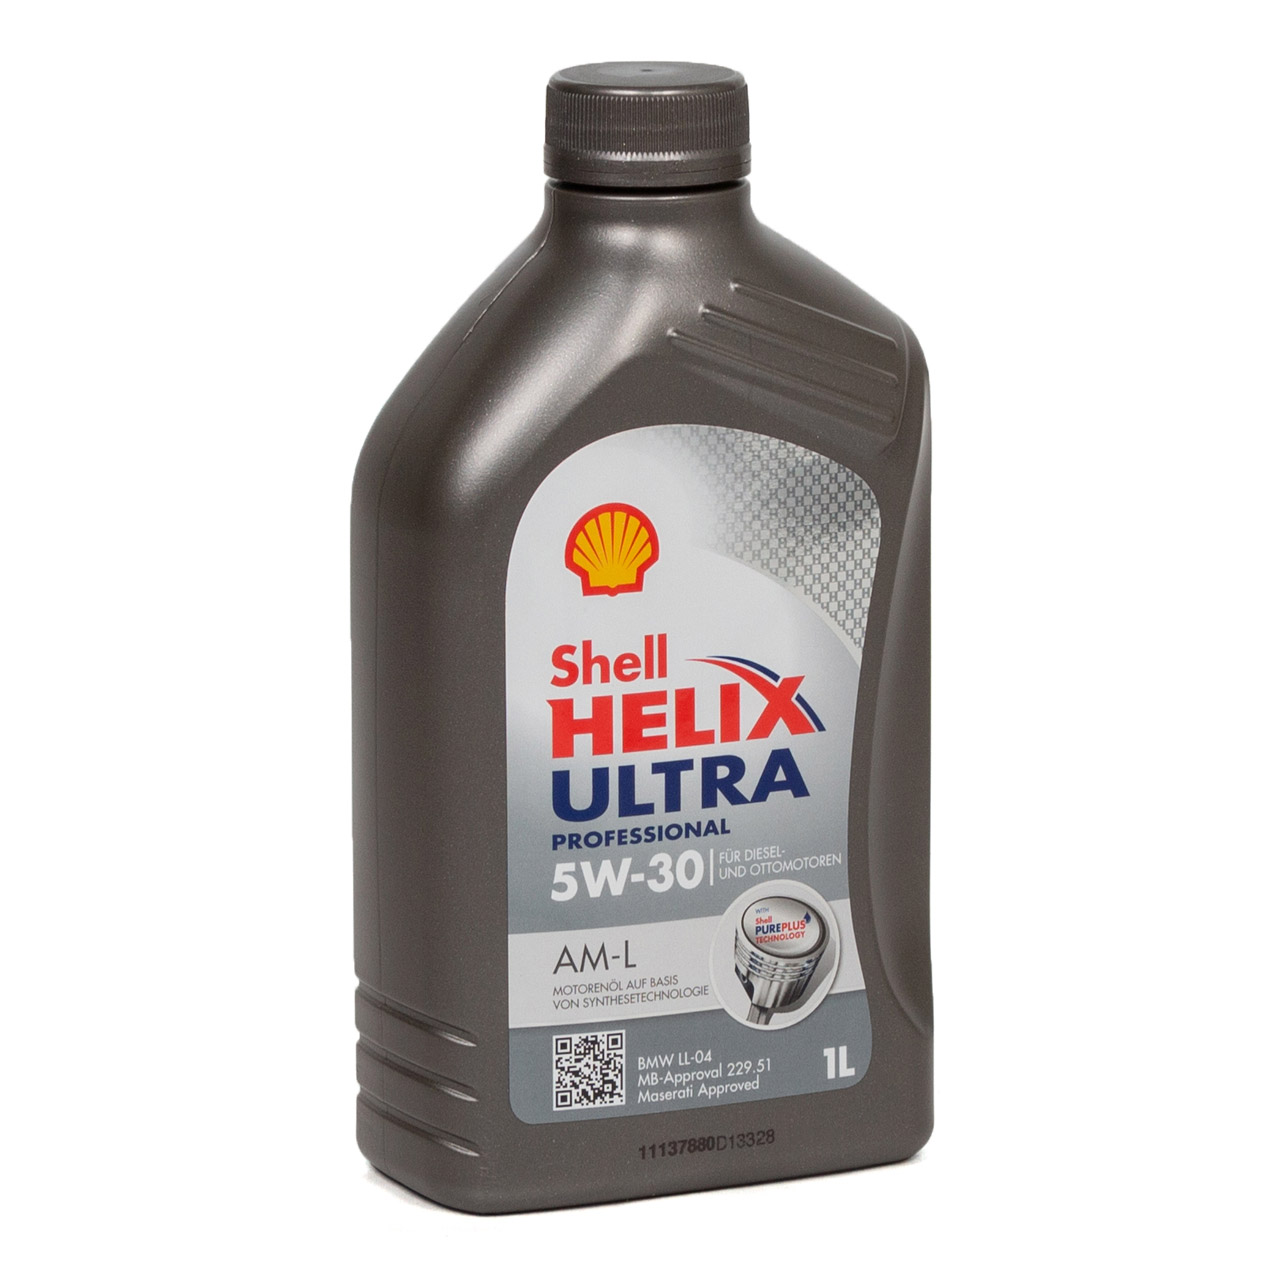 1L 1 Liter SHELL HELIX ULTRA PROFESSIONAL AM-L 5W-30 Motoröl BMW LL-04 MB 229.51